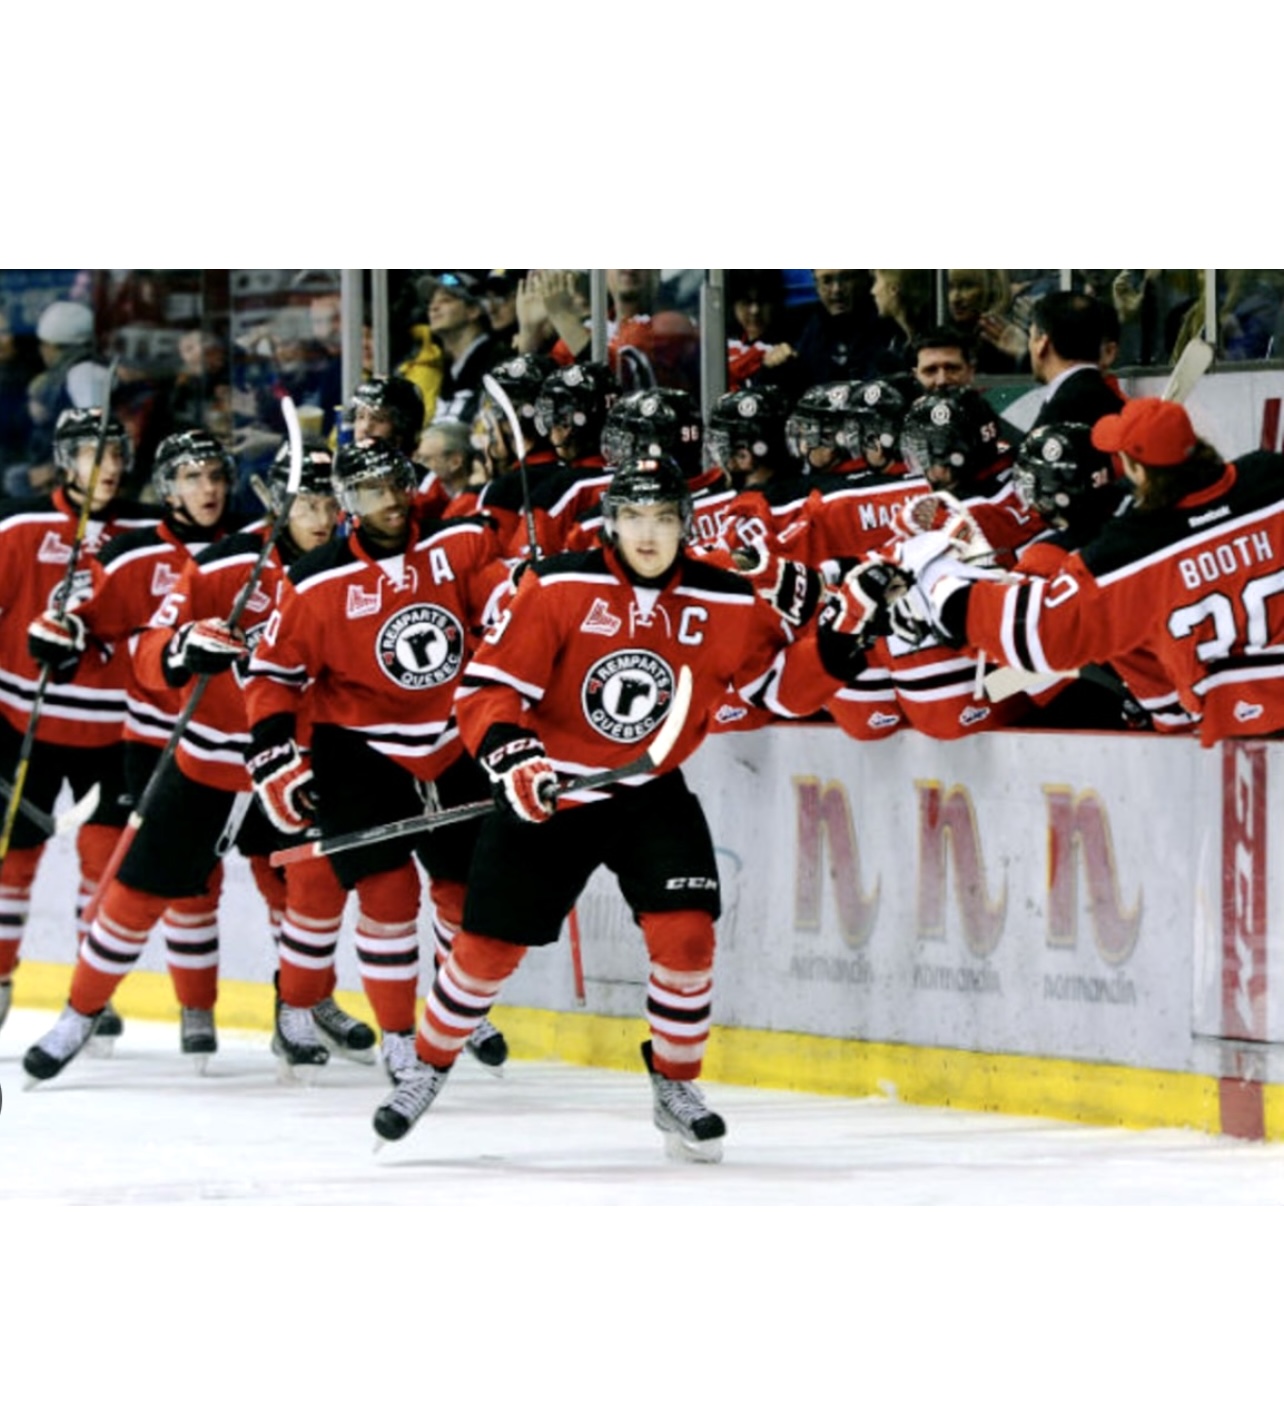 Un groupe de joueurs de hockey québécois célébrant un but dans la ville des champions.